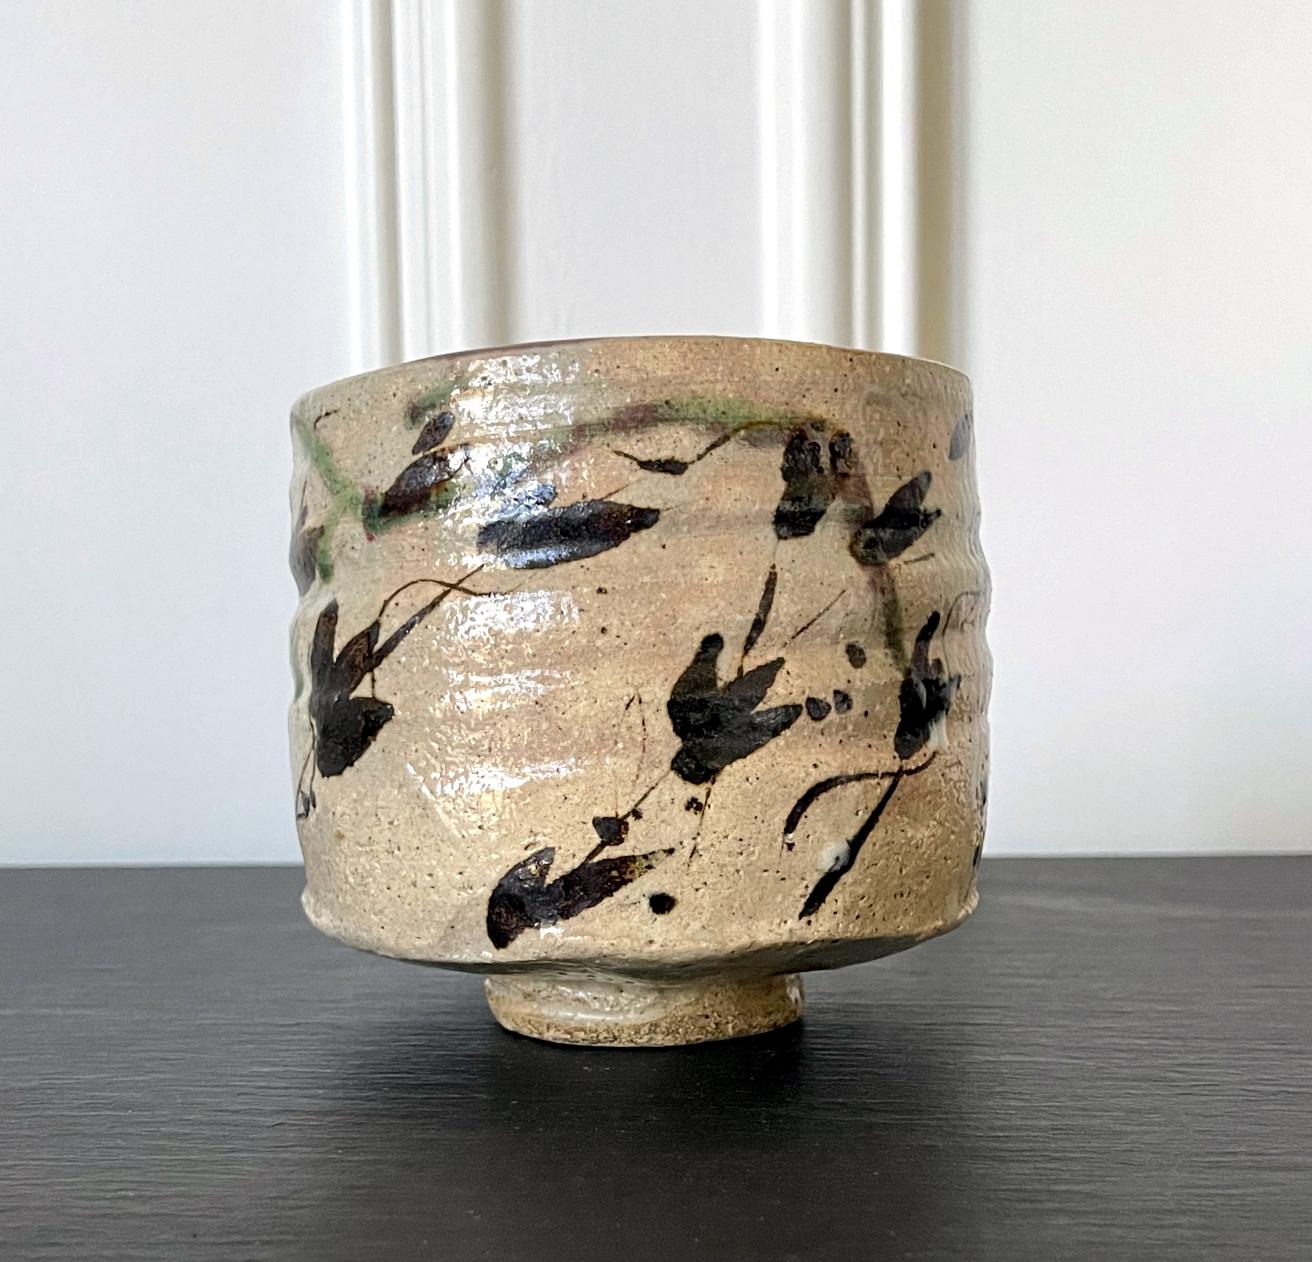 Un chawan (bol à thé) japonais Kutsu-gata (en forme de sabot) datant du 19e siècle, peut-être plus ancien. Le bol en grès empoté dans de l'argile chamois a une forme légèrement irrégulière et une profondeur inhabituelle pour un bol à thé. De type